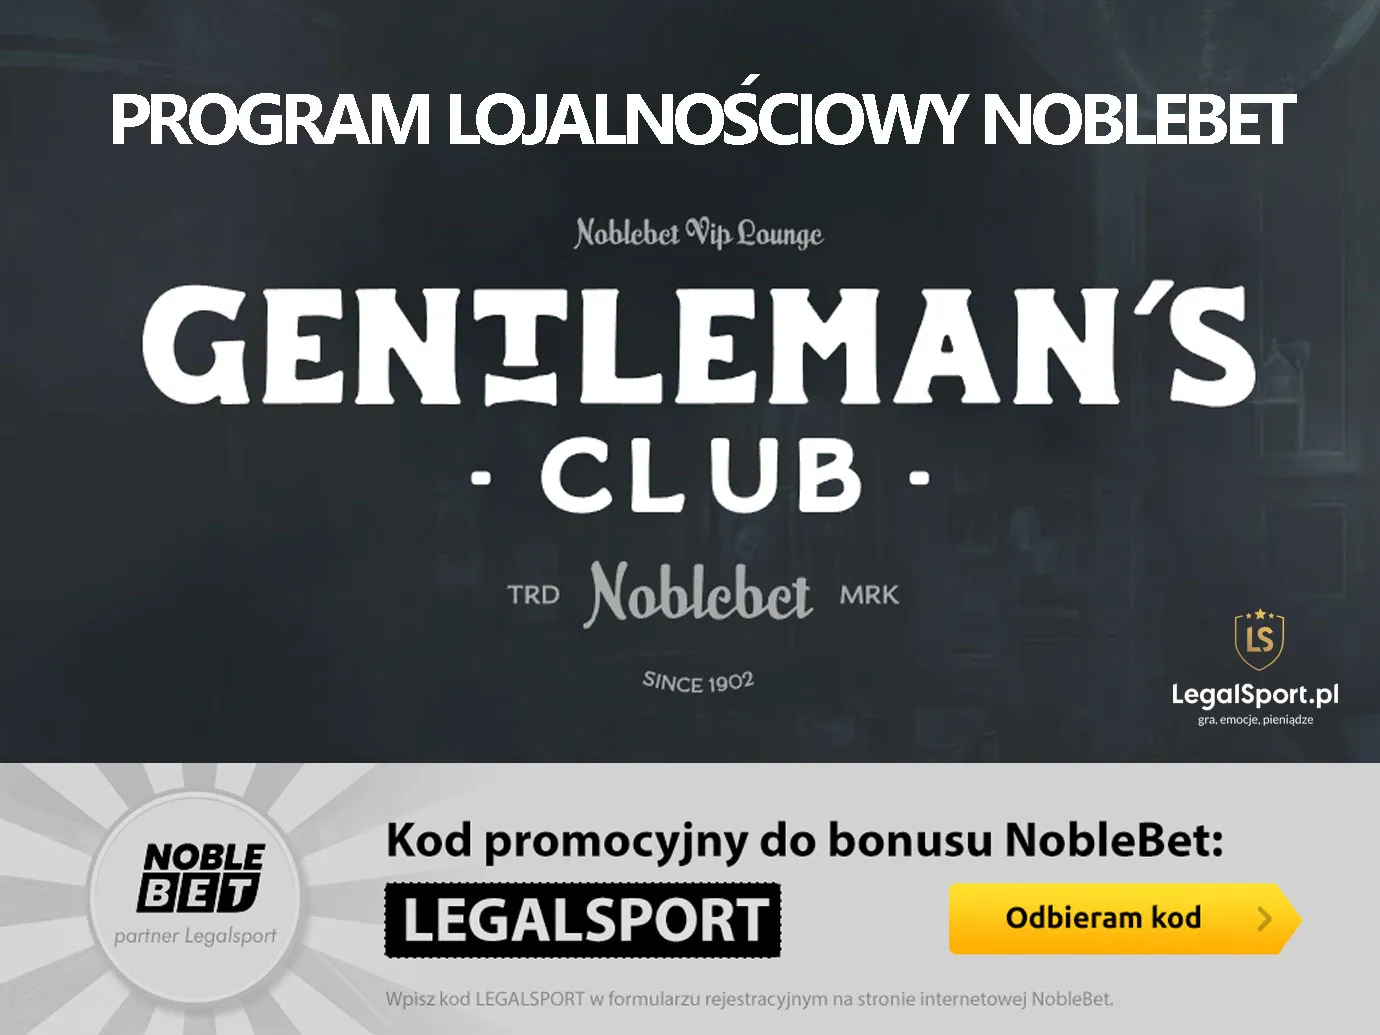 Gentleman's Club - program lojalnościowy Noblebet